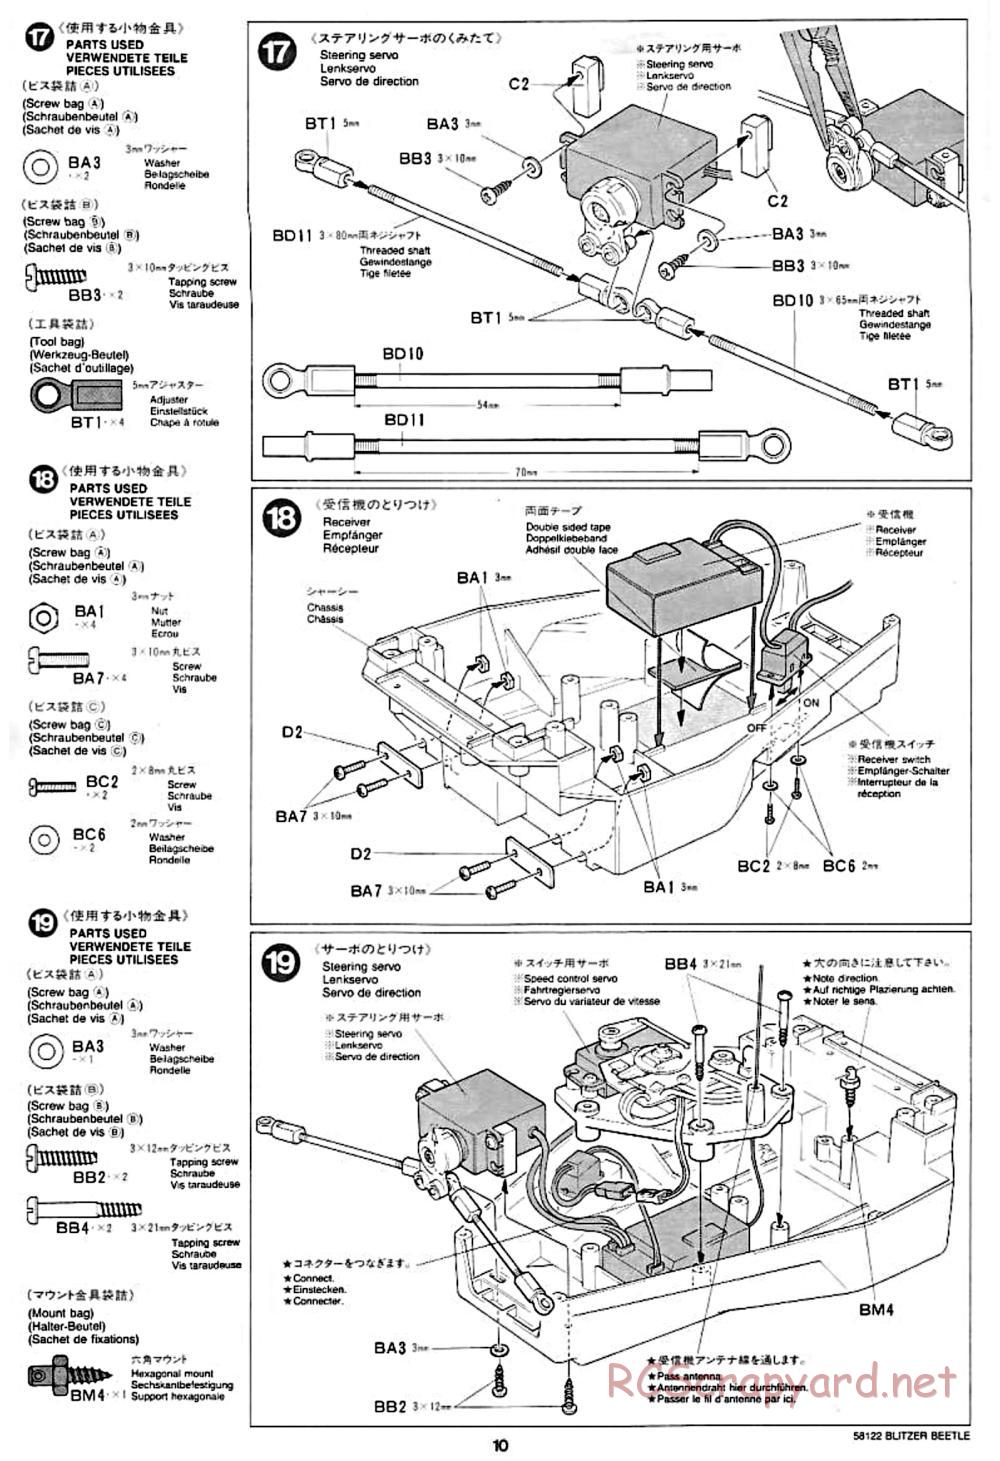 Tamiya - Blitzer Beetle Chassis - Manual - Page 10